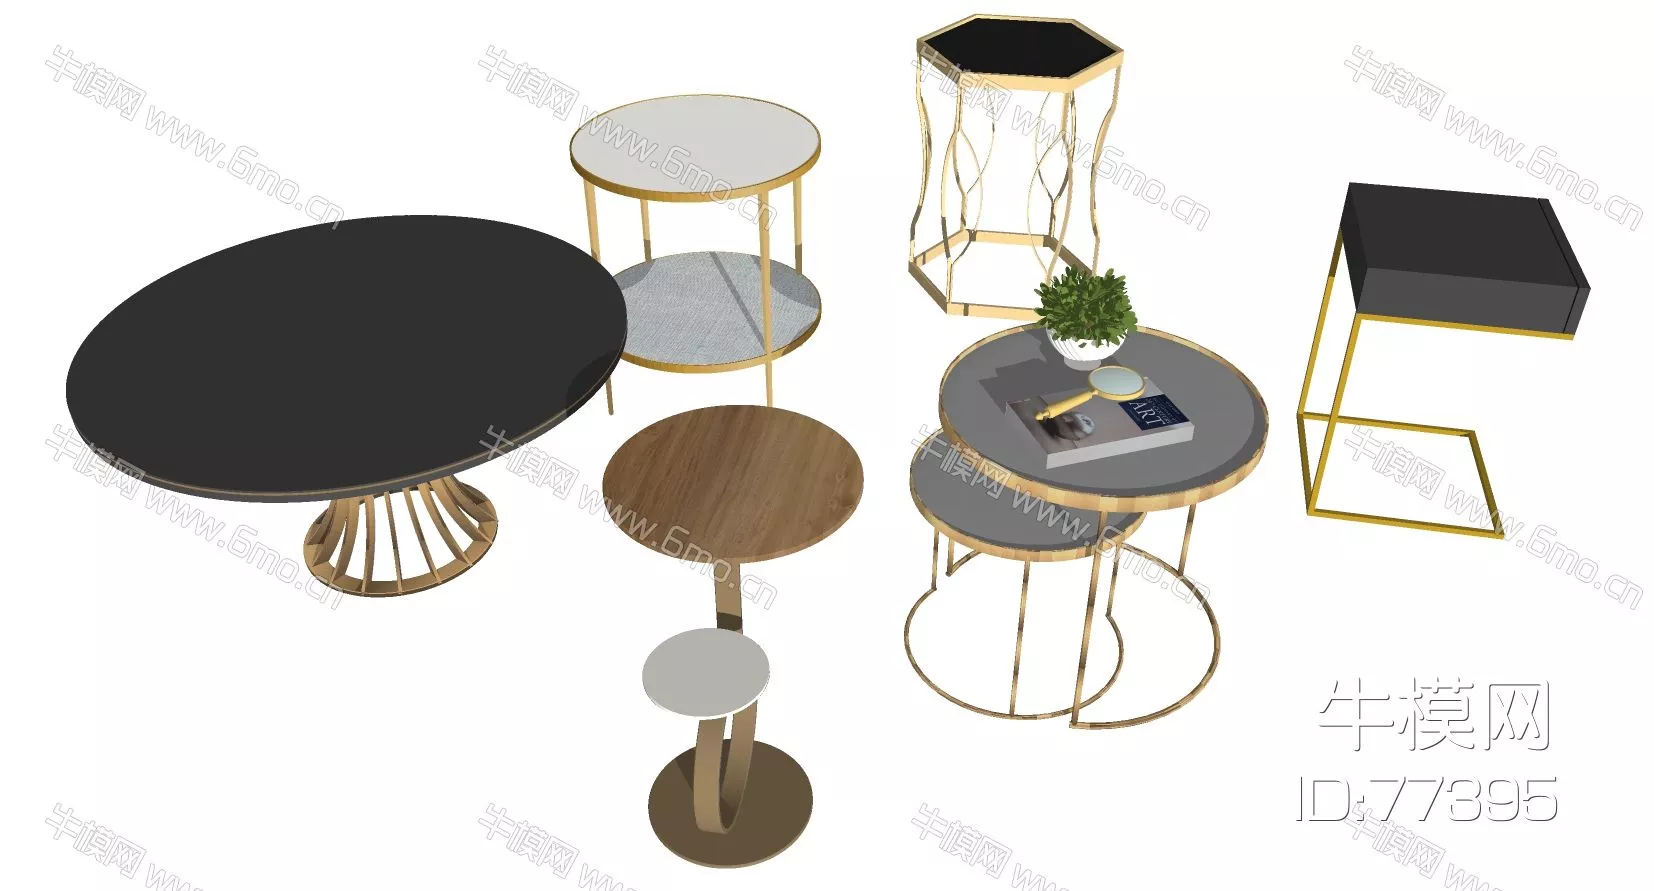 NORDIC SIDE TABLE - SKETCHUP 3D MODEL - ENSCAPE - 77395